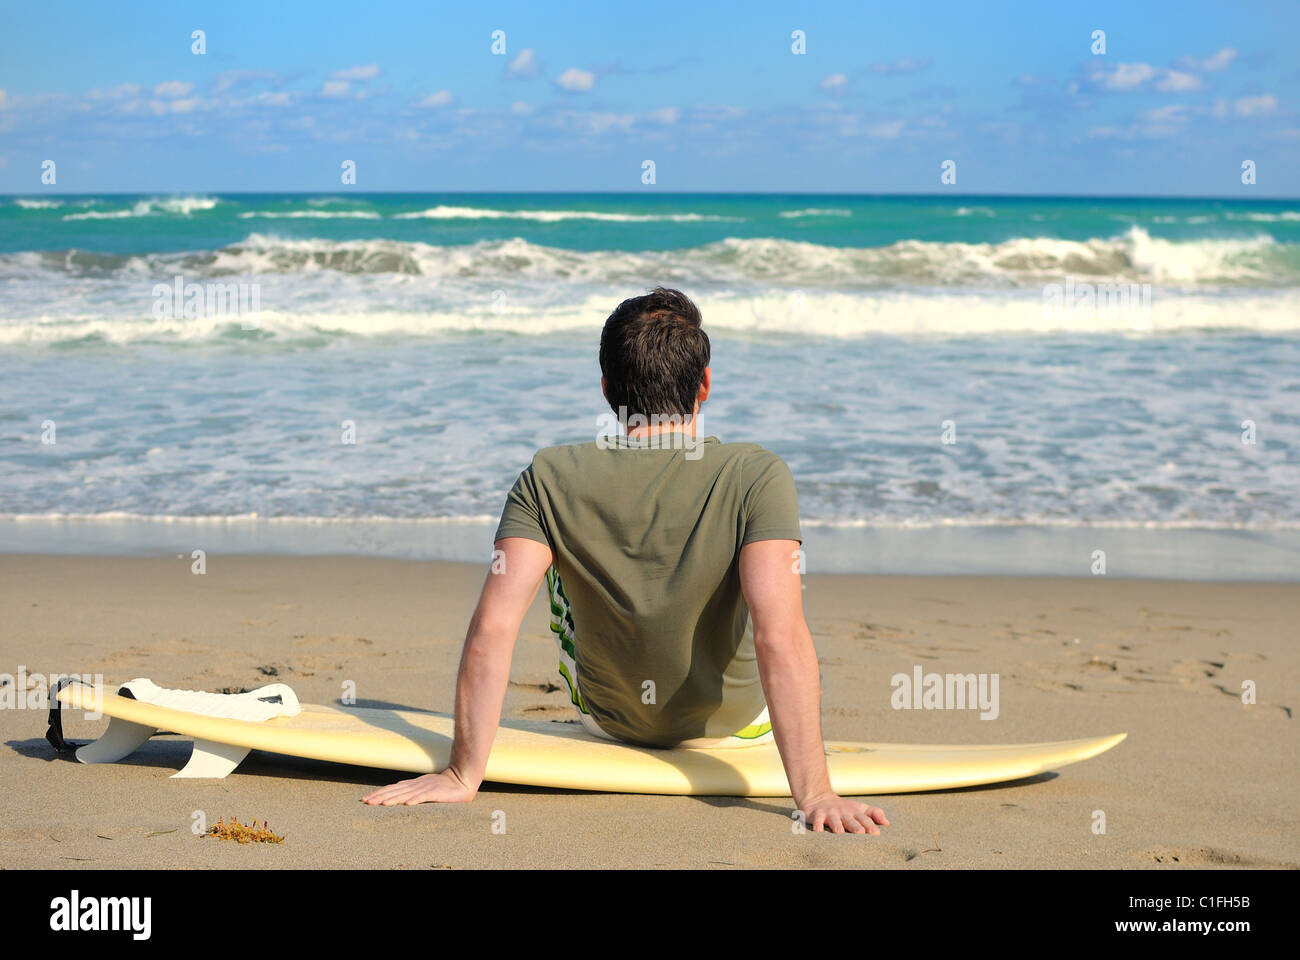 Surfeur sur la plage avec sa planche. Banque D'Images